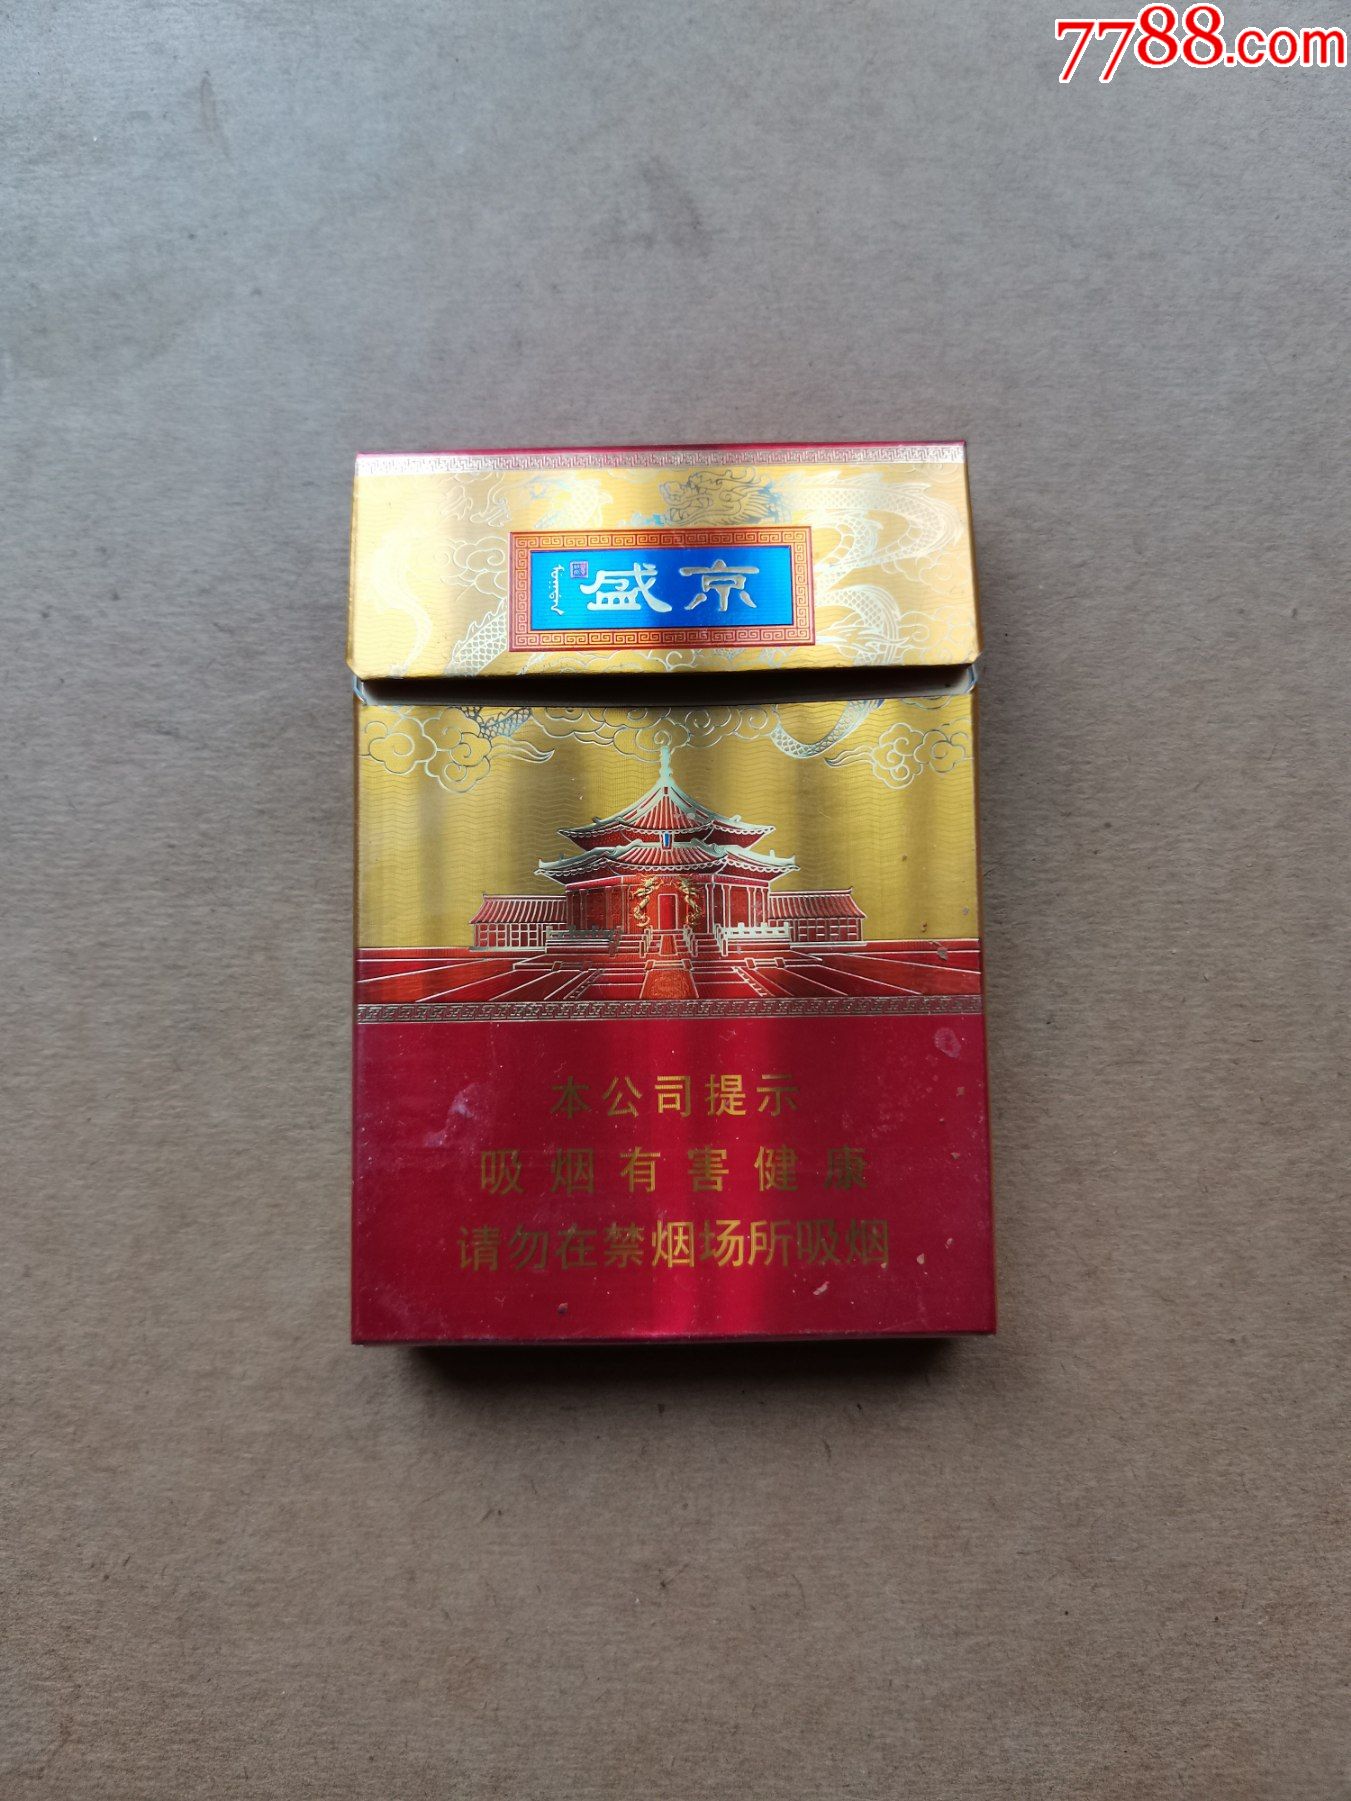 盛京香烟30元图片